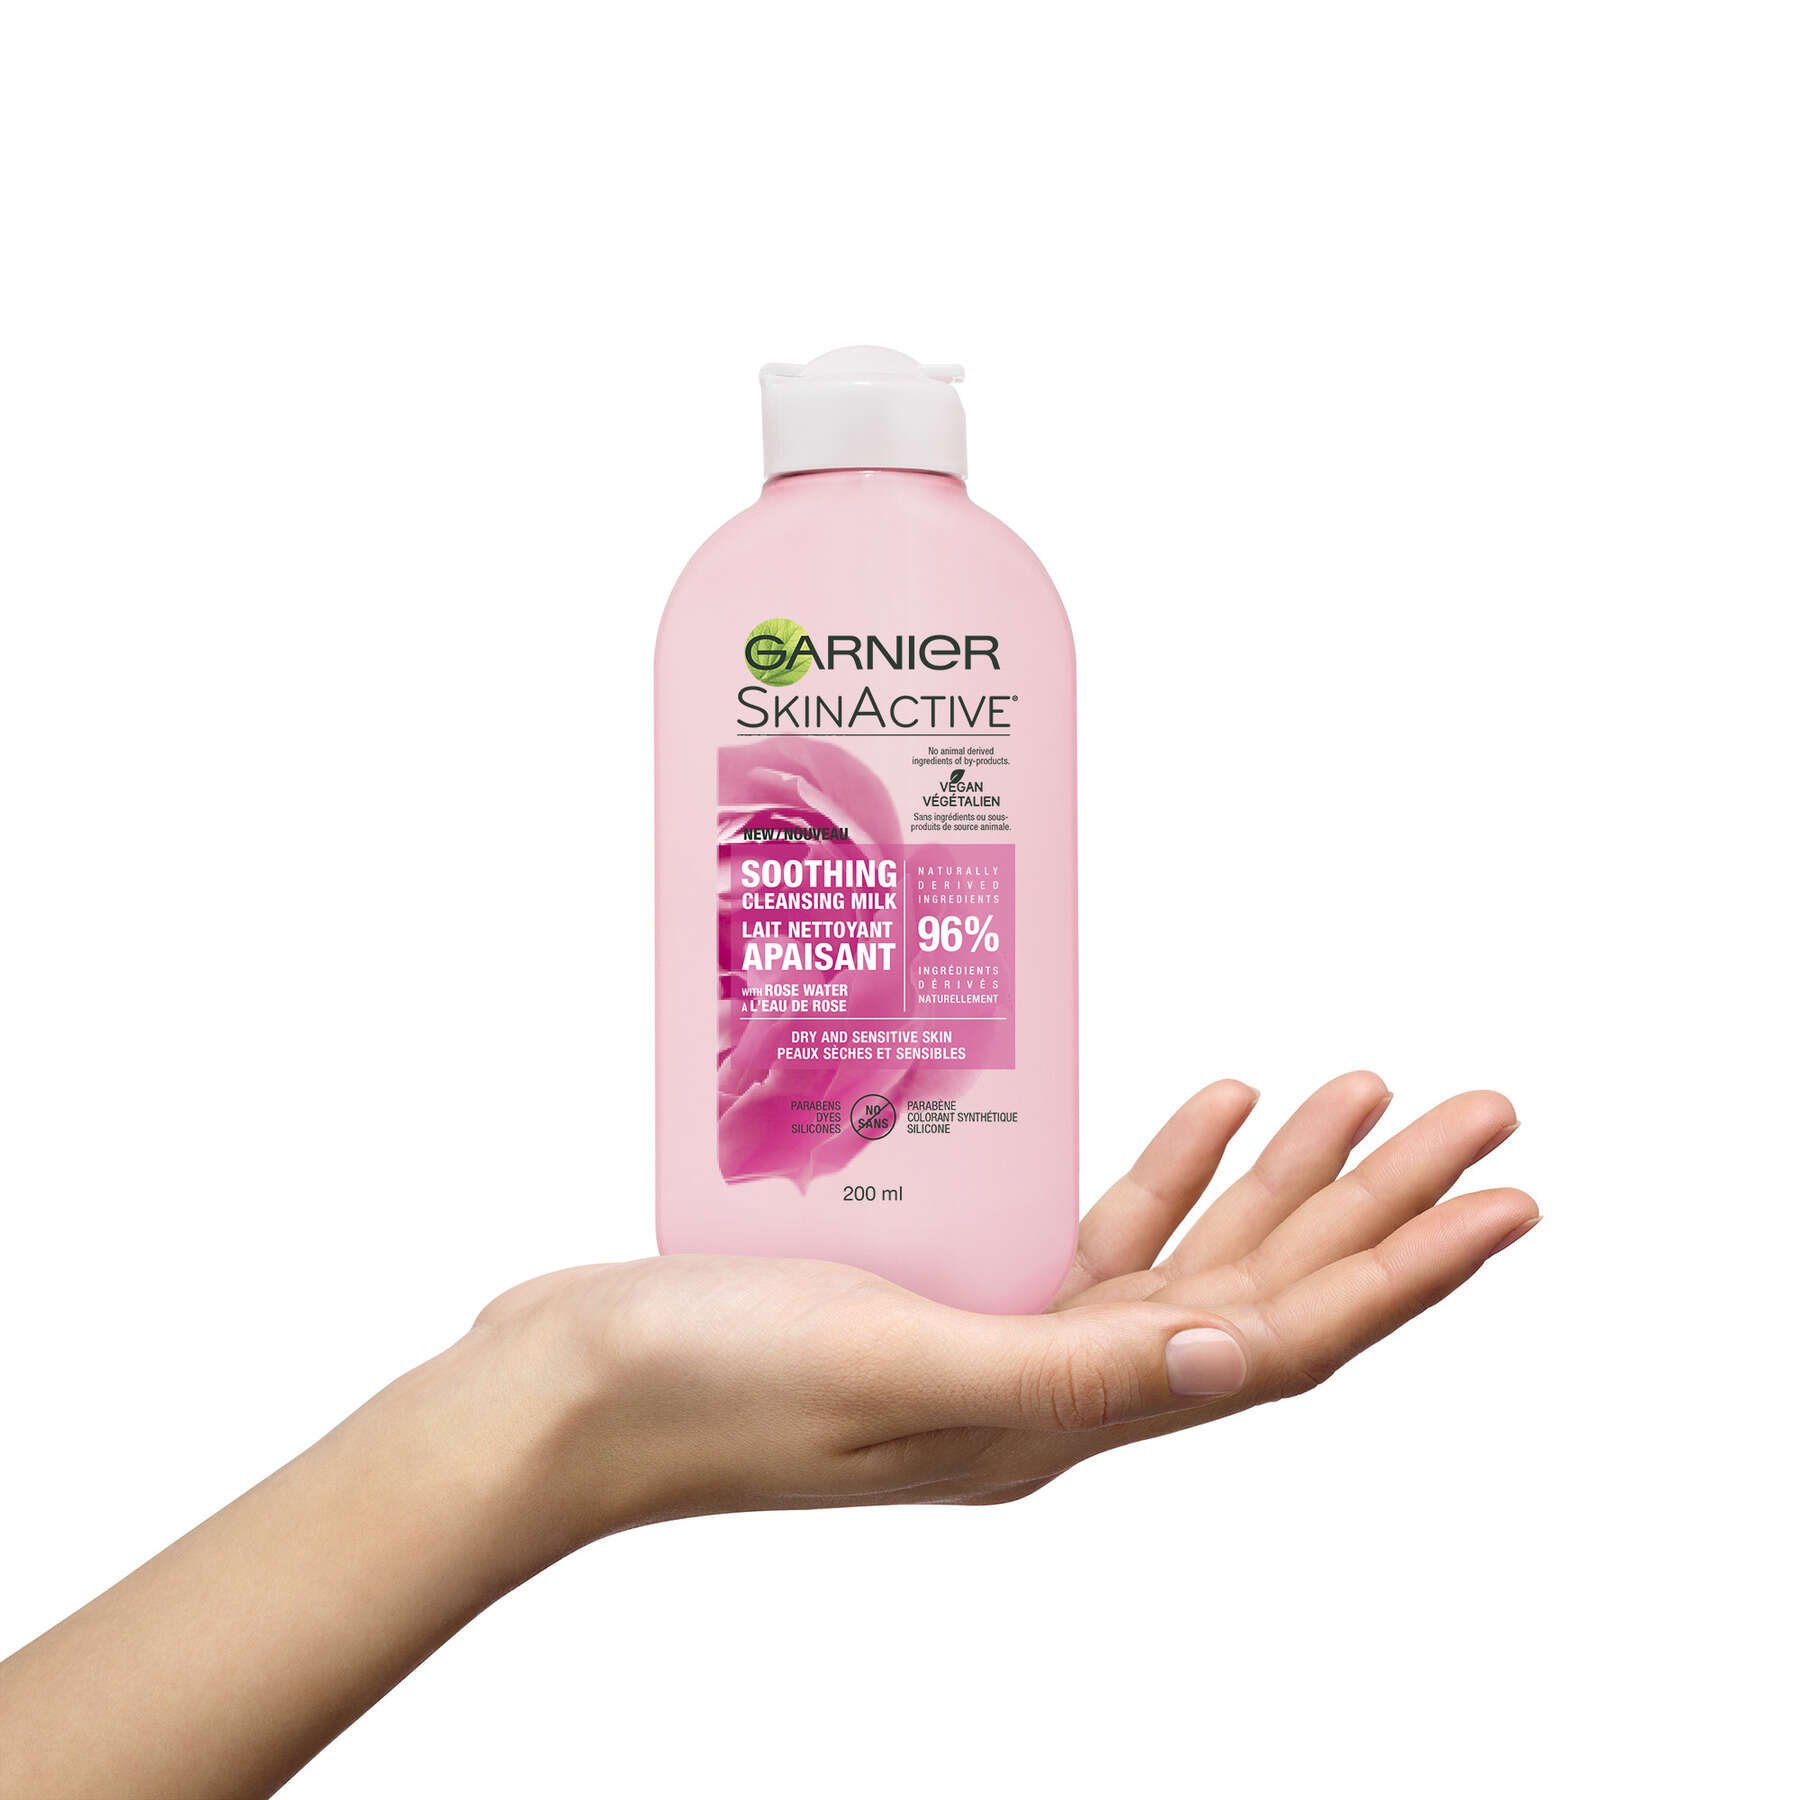 garnier cleanser skinactive milk face wash with rose water 200 ml 3600542116688 inhand